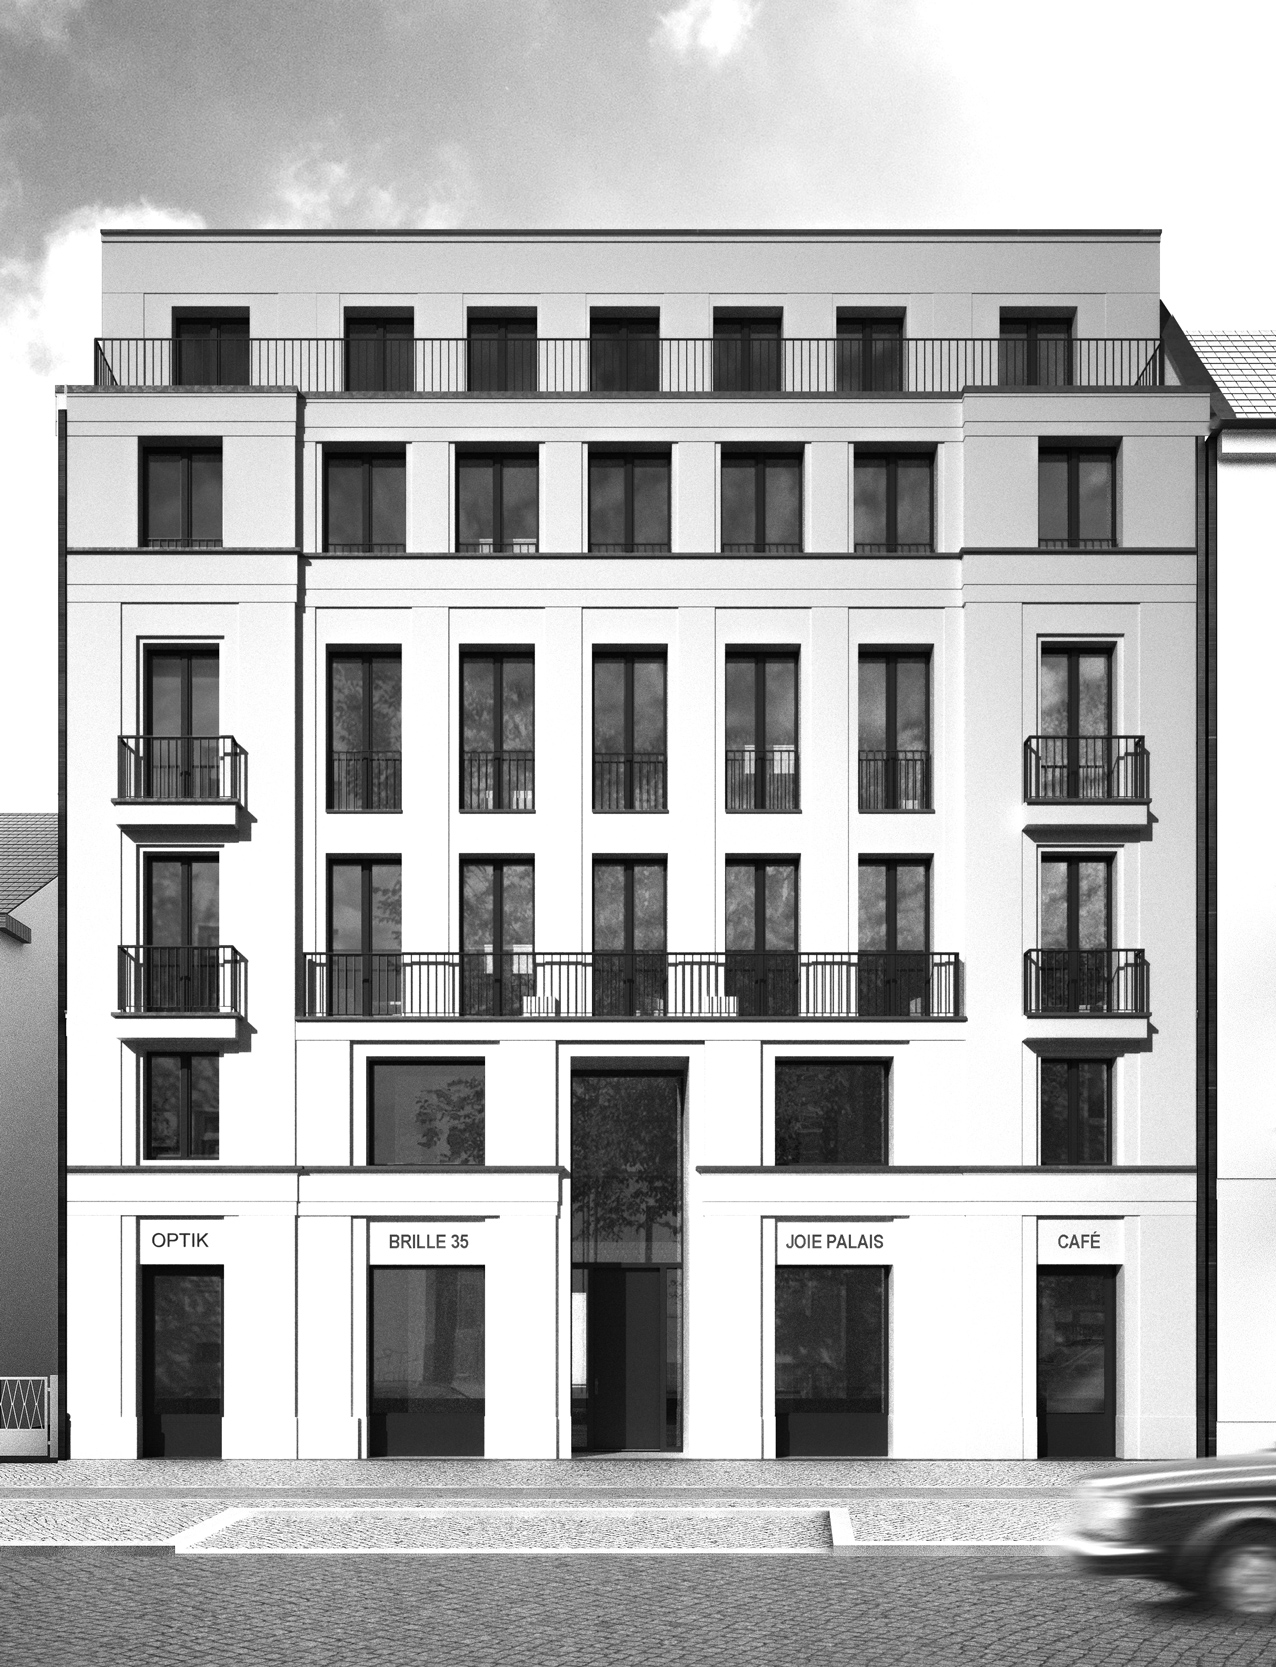 Der Neubau greift gestalterisch typische Merkmale des traditionellen Berliner Mietshauses auf.